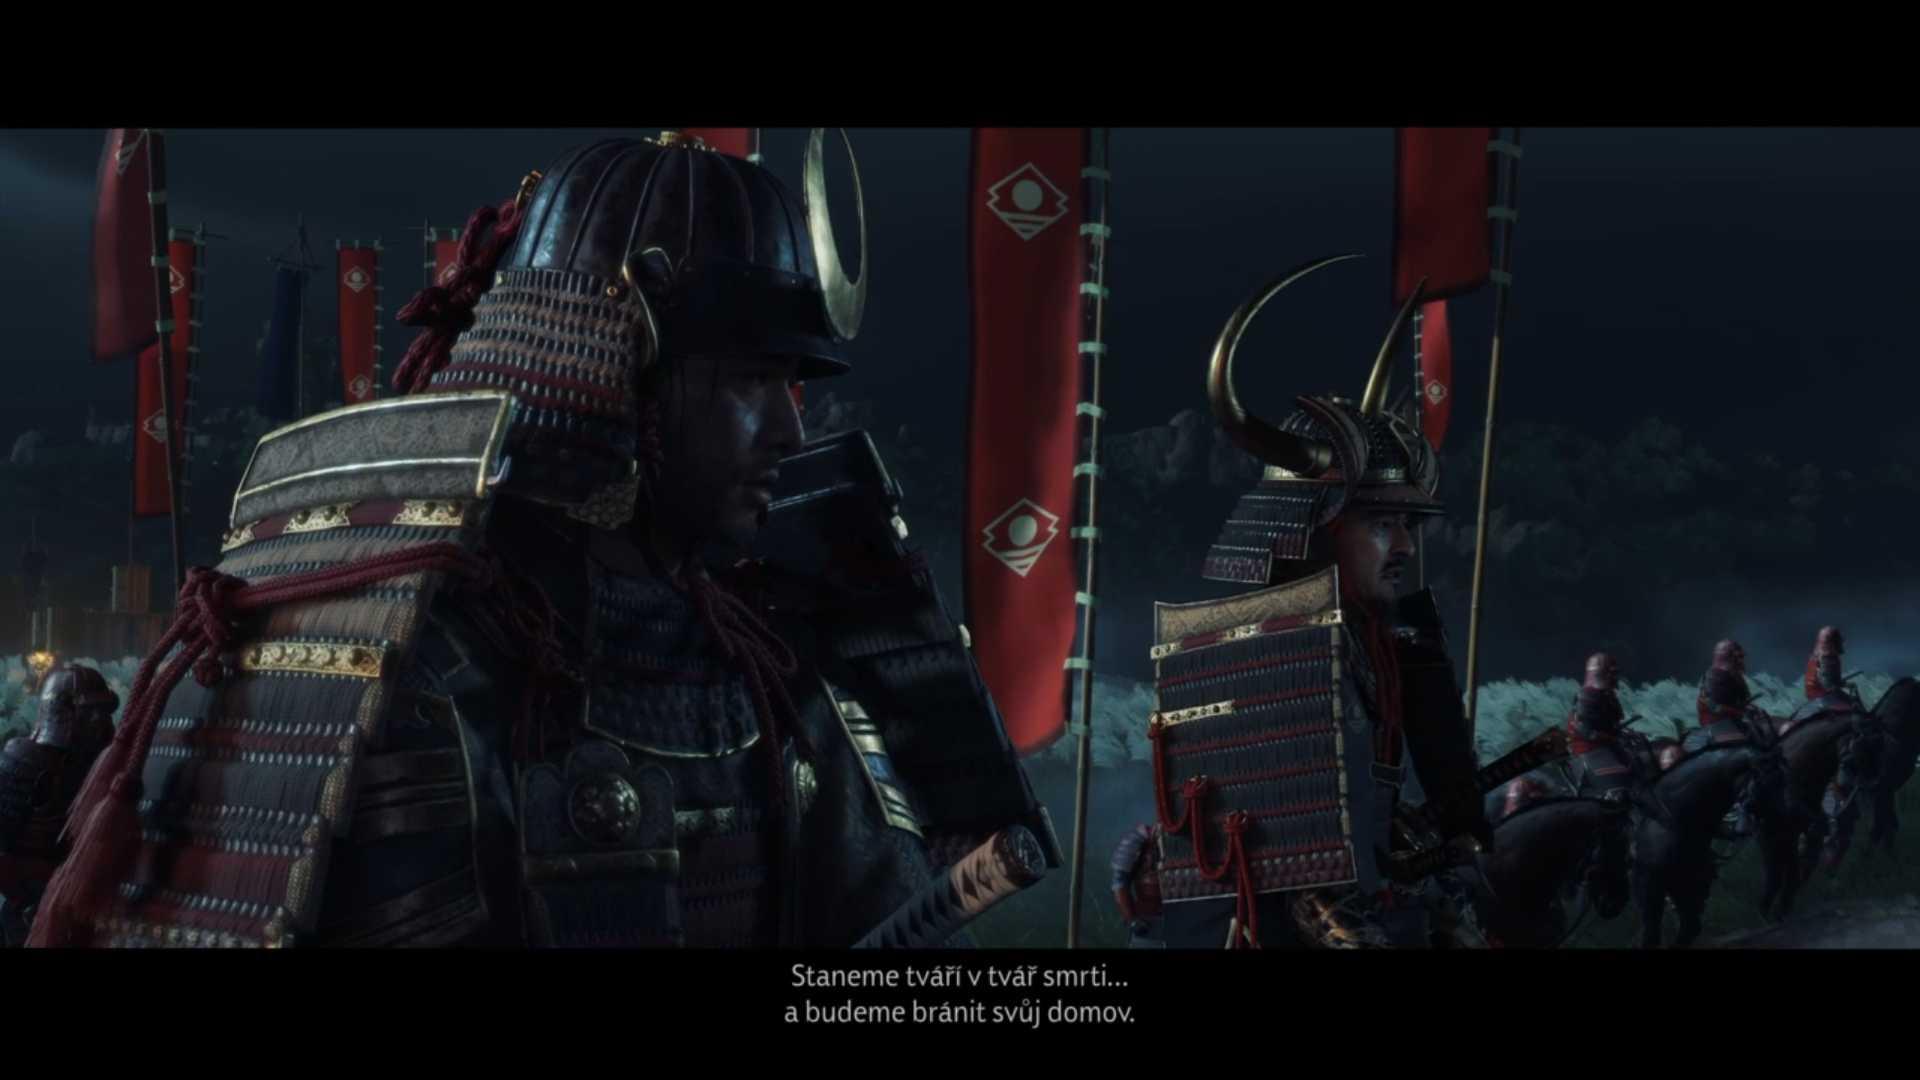 Samuraji sa postavia Mongolom už v úvode hry. Konfrontácia však nedopadne v ich prospech.